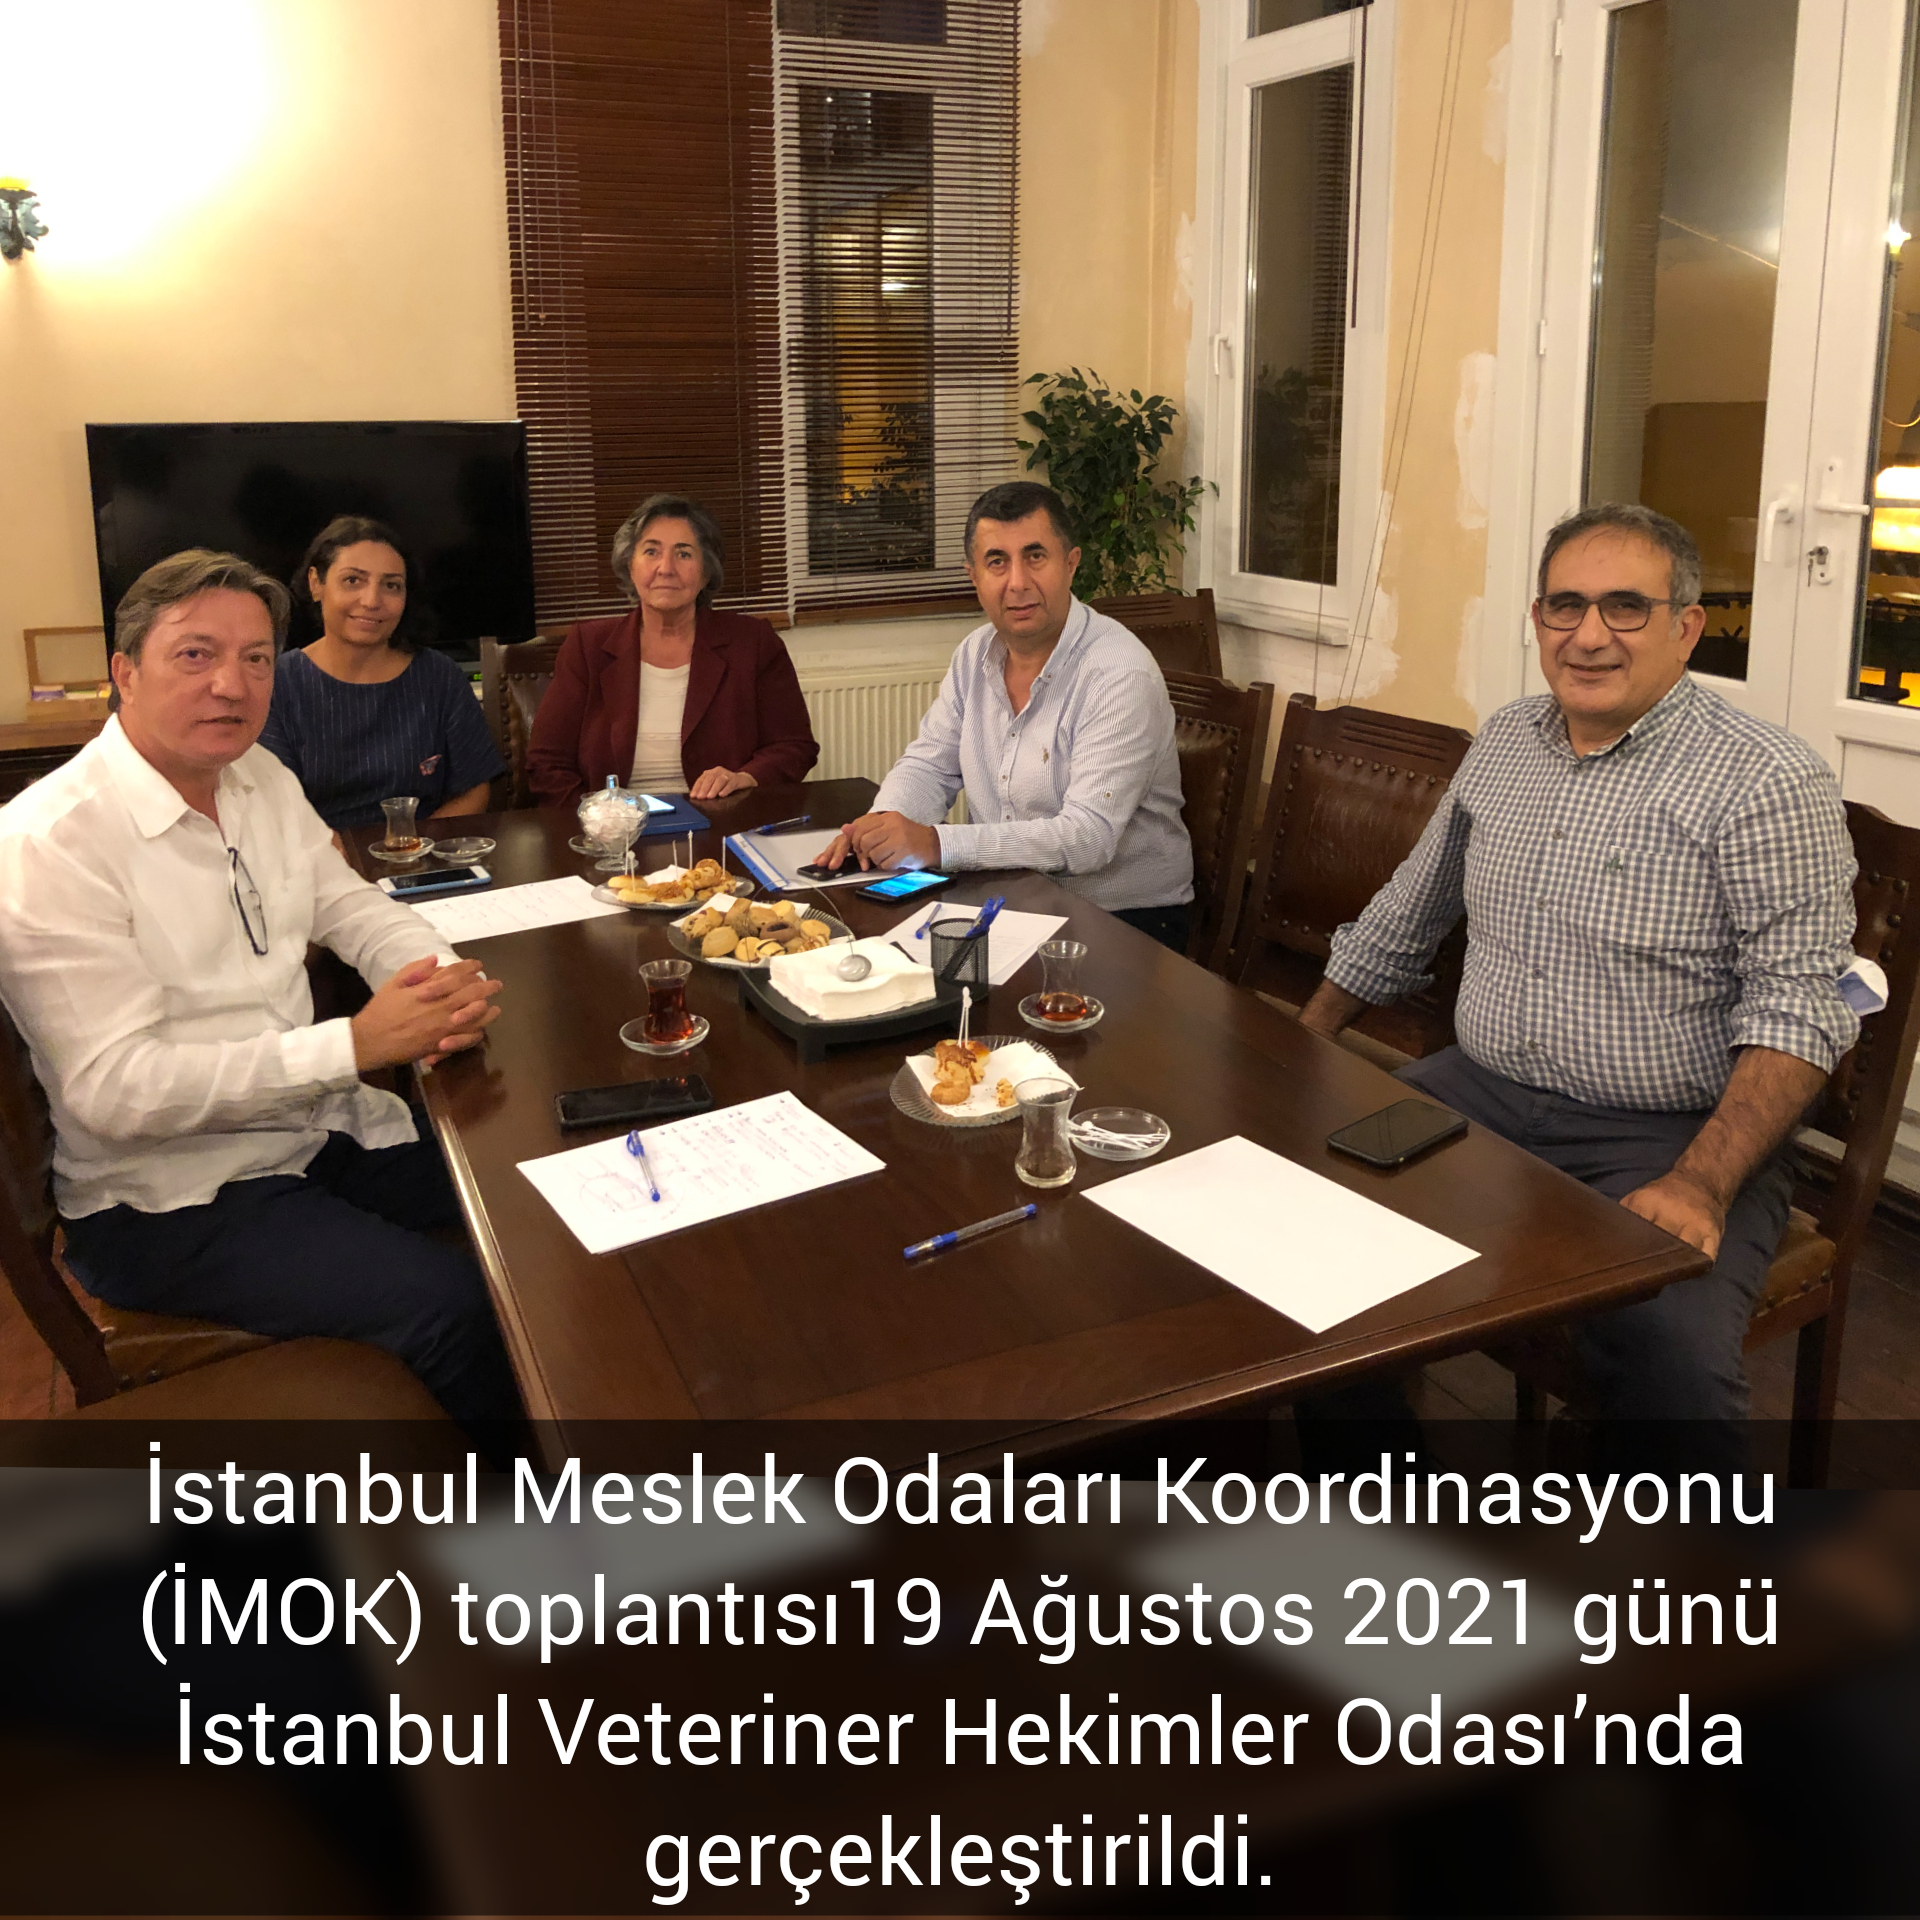 İstanbul Meslek Odaları Koordinasyonu (İMOK) toplantısı 19 Ağustos 2021 günü İstanbul Veteriner Hekimler Odası’nda gerçekleştirildi.